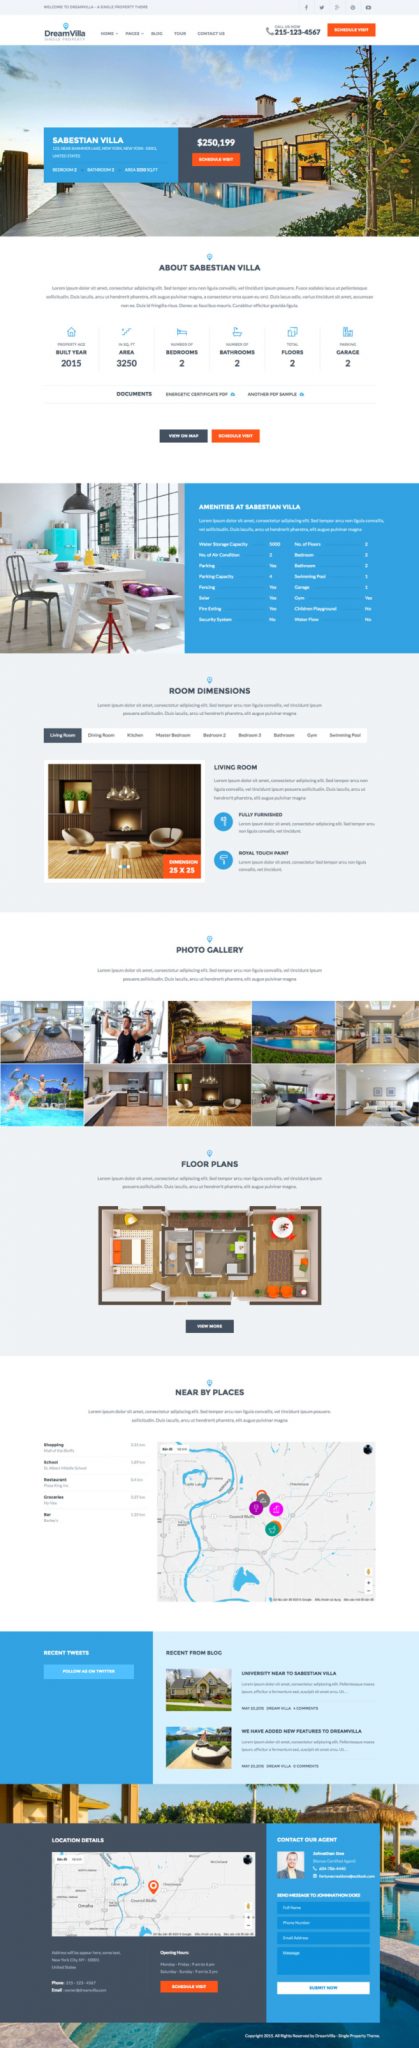 Thiết kế website bất động sản chuyên nghiệp – DreamVilla